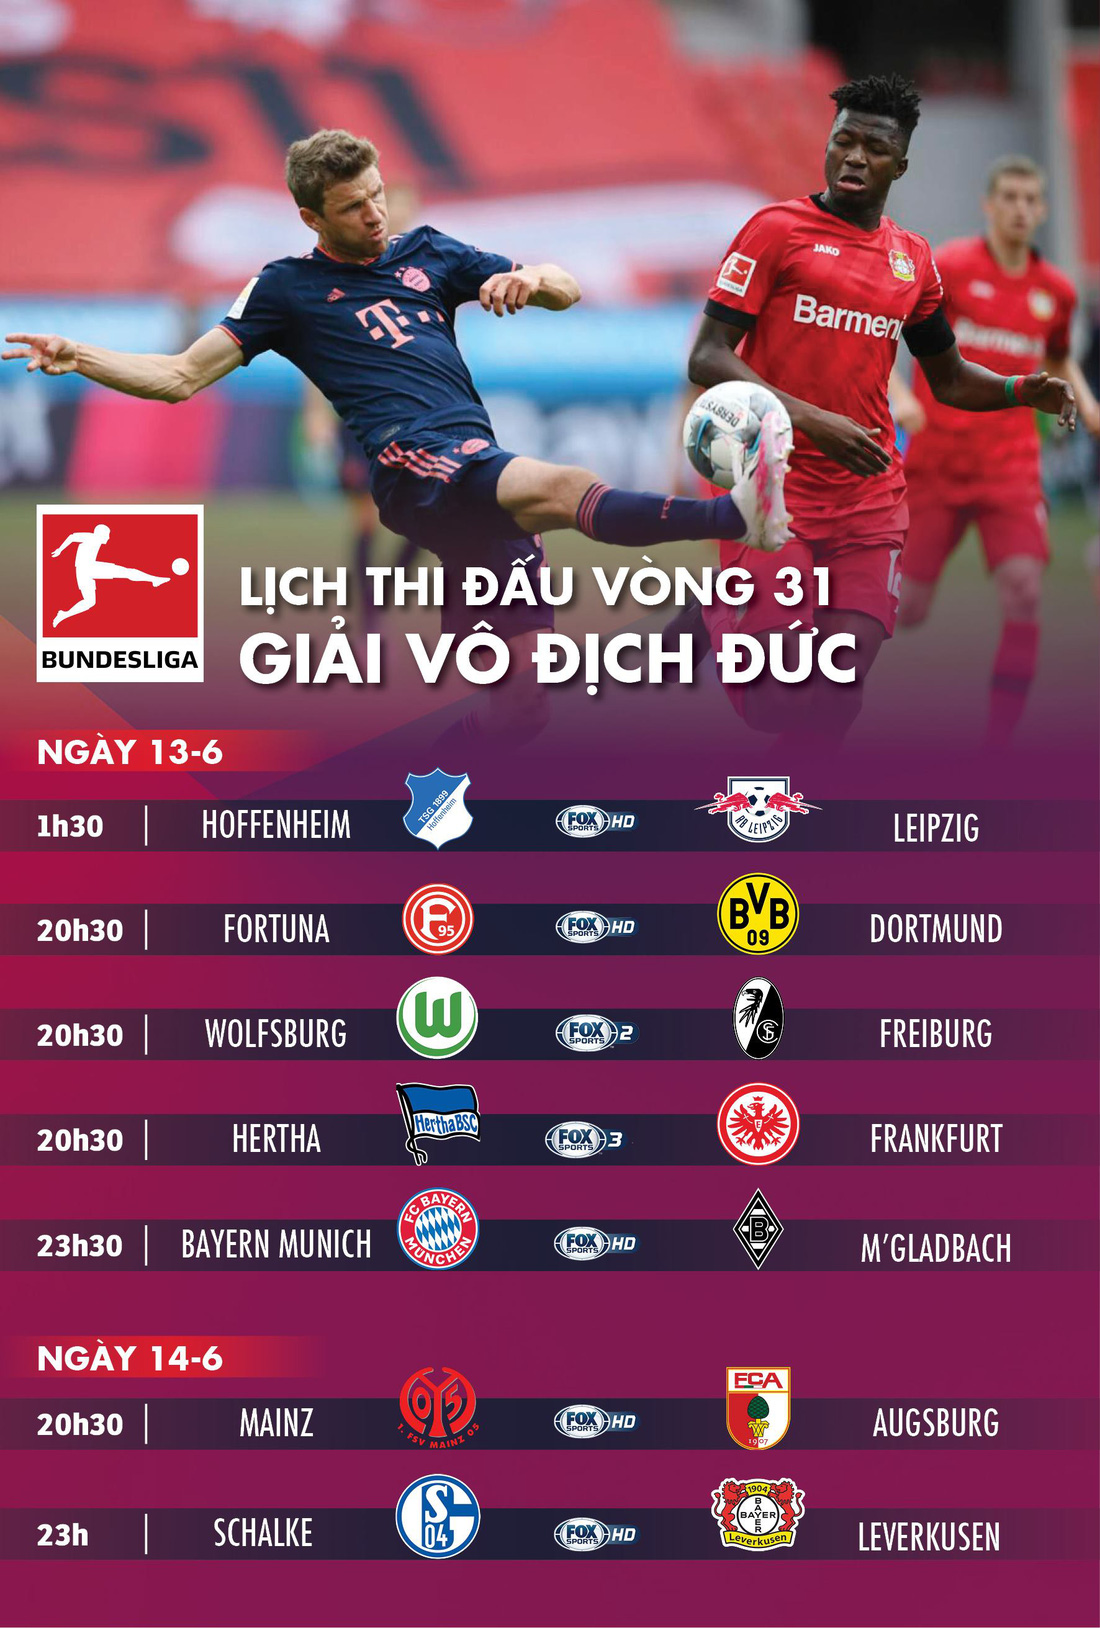 Lịch trực tiếp vòng 31 Bundesliga cuối tuần này - Ảnh 1.